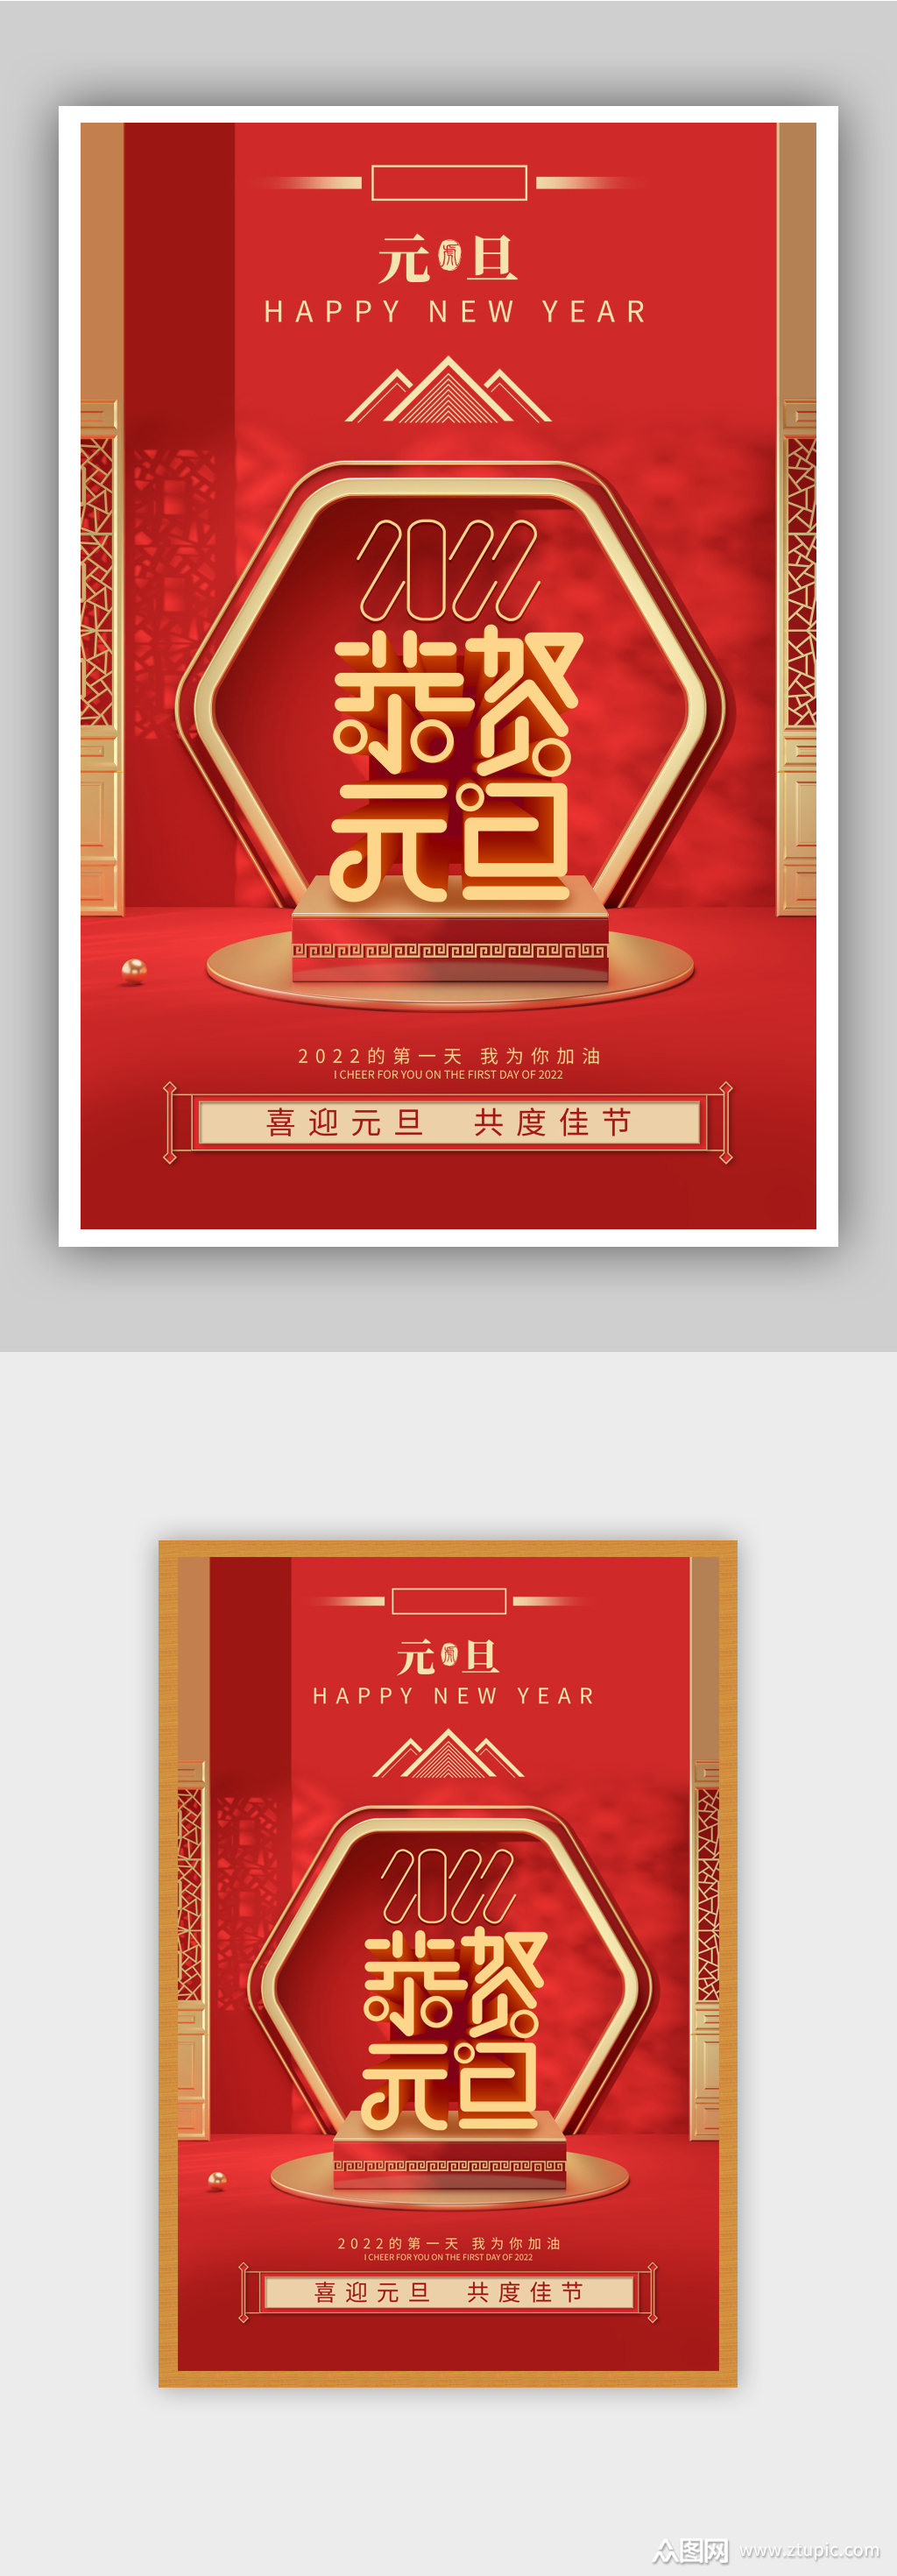 红色喜庆元旦节庆祝海报素材